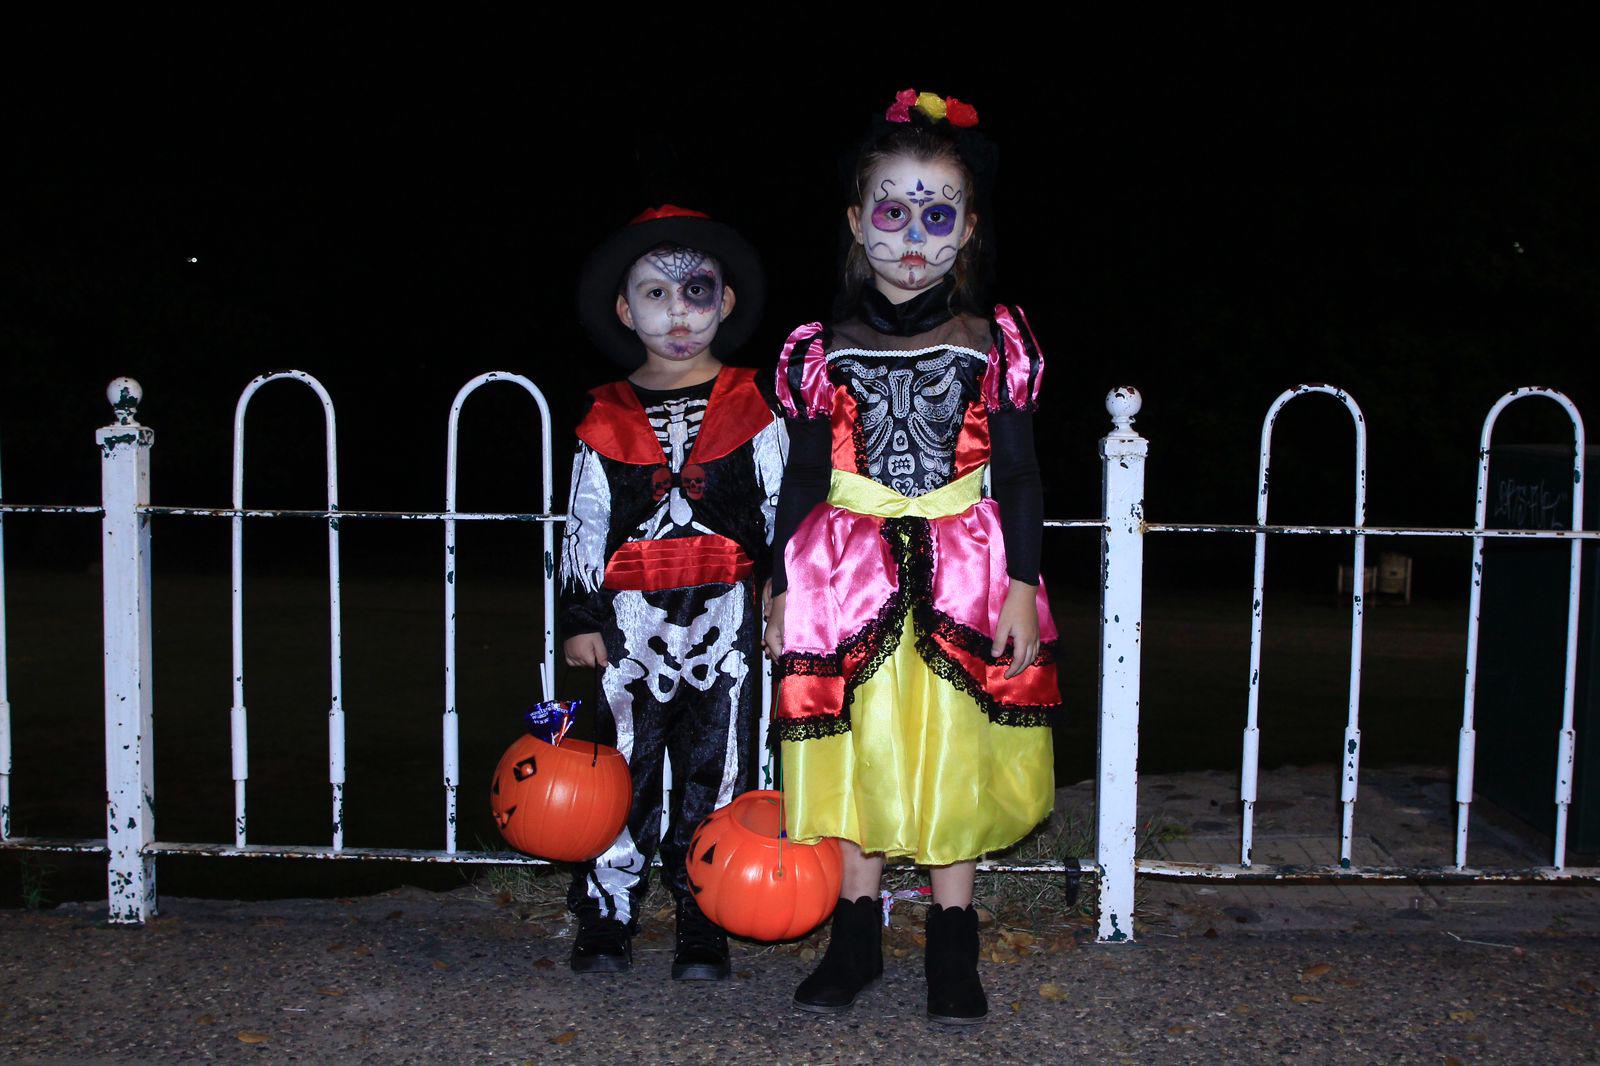 $!#Galería | Salen familias de Culiacán a celebrar la noche de Halloween en avenidas vigiladas